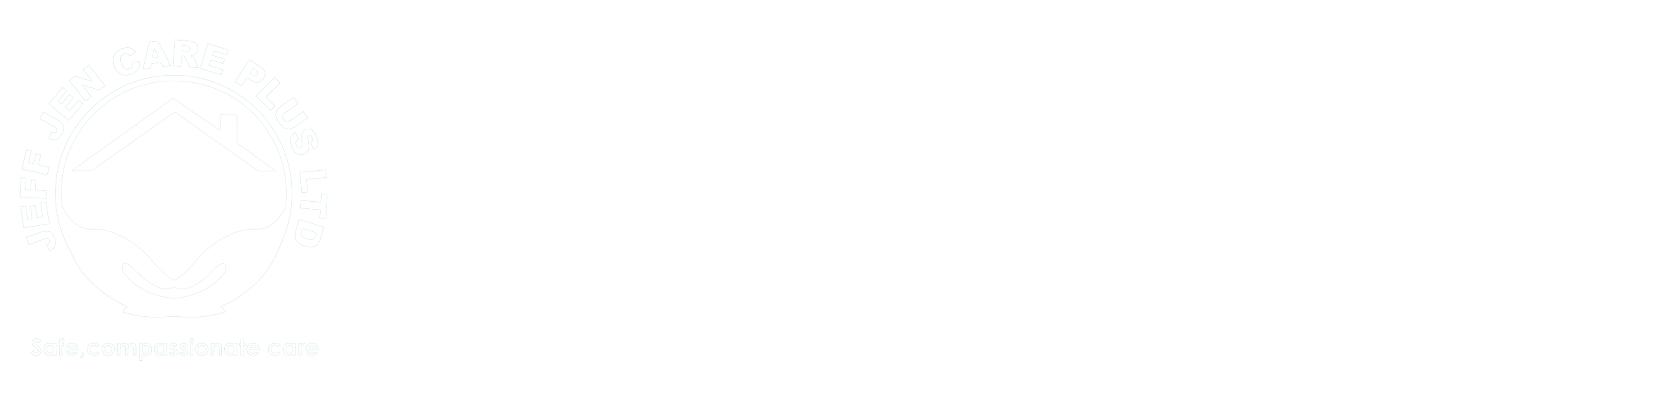 Jeff Jen Care Plus Ltd.